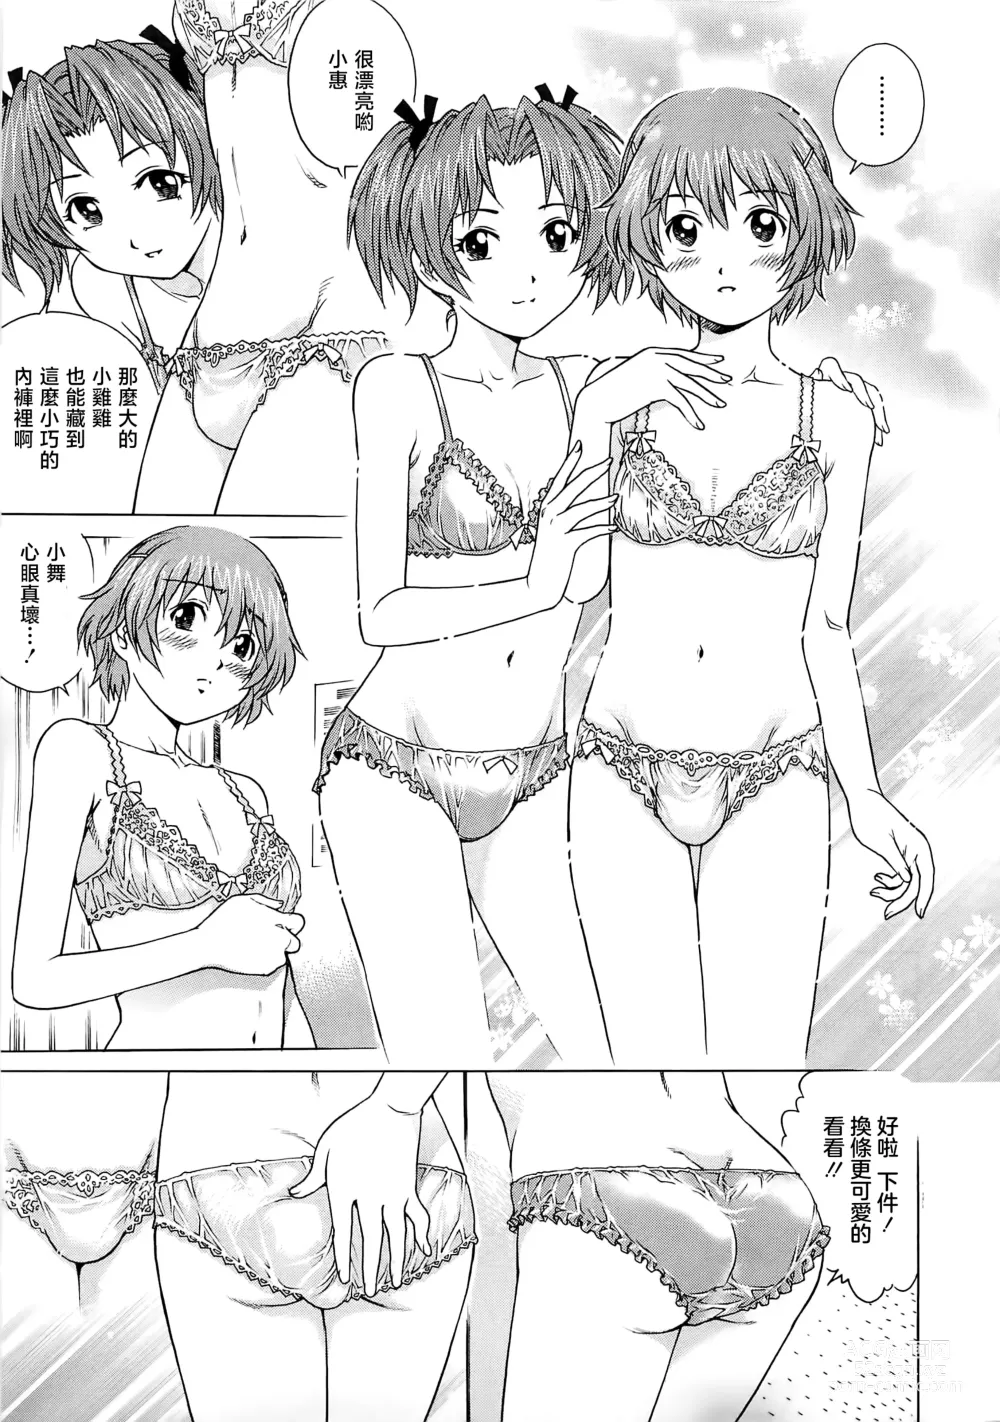 Page 14 of manga Bokutachi Otokonoko